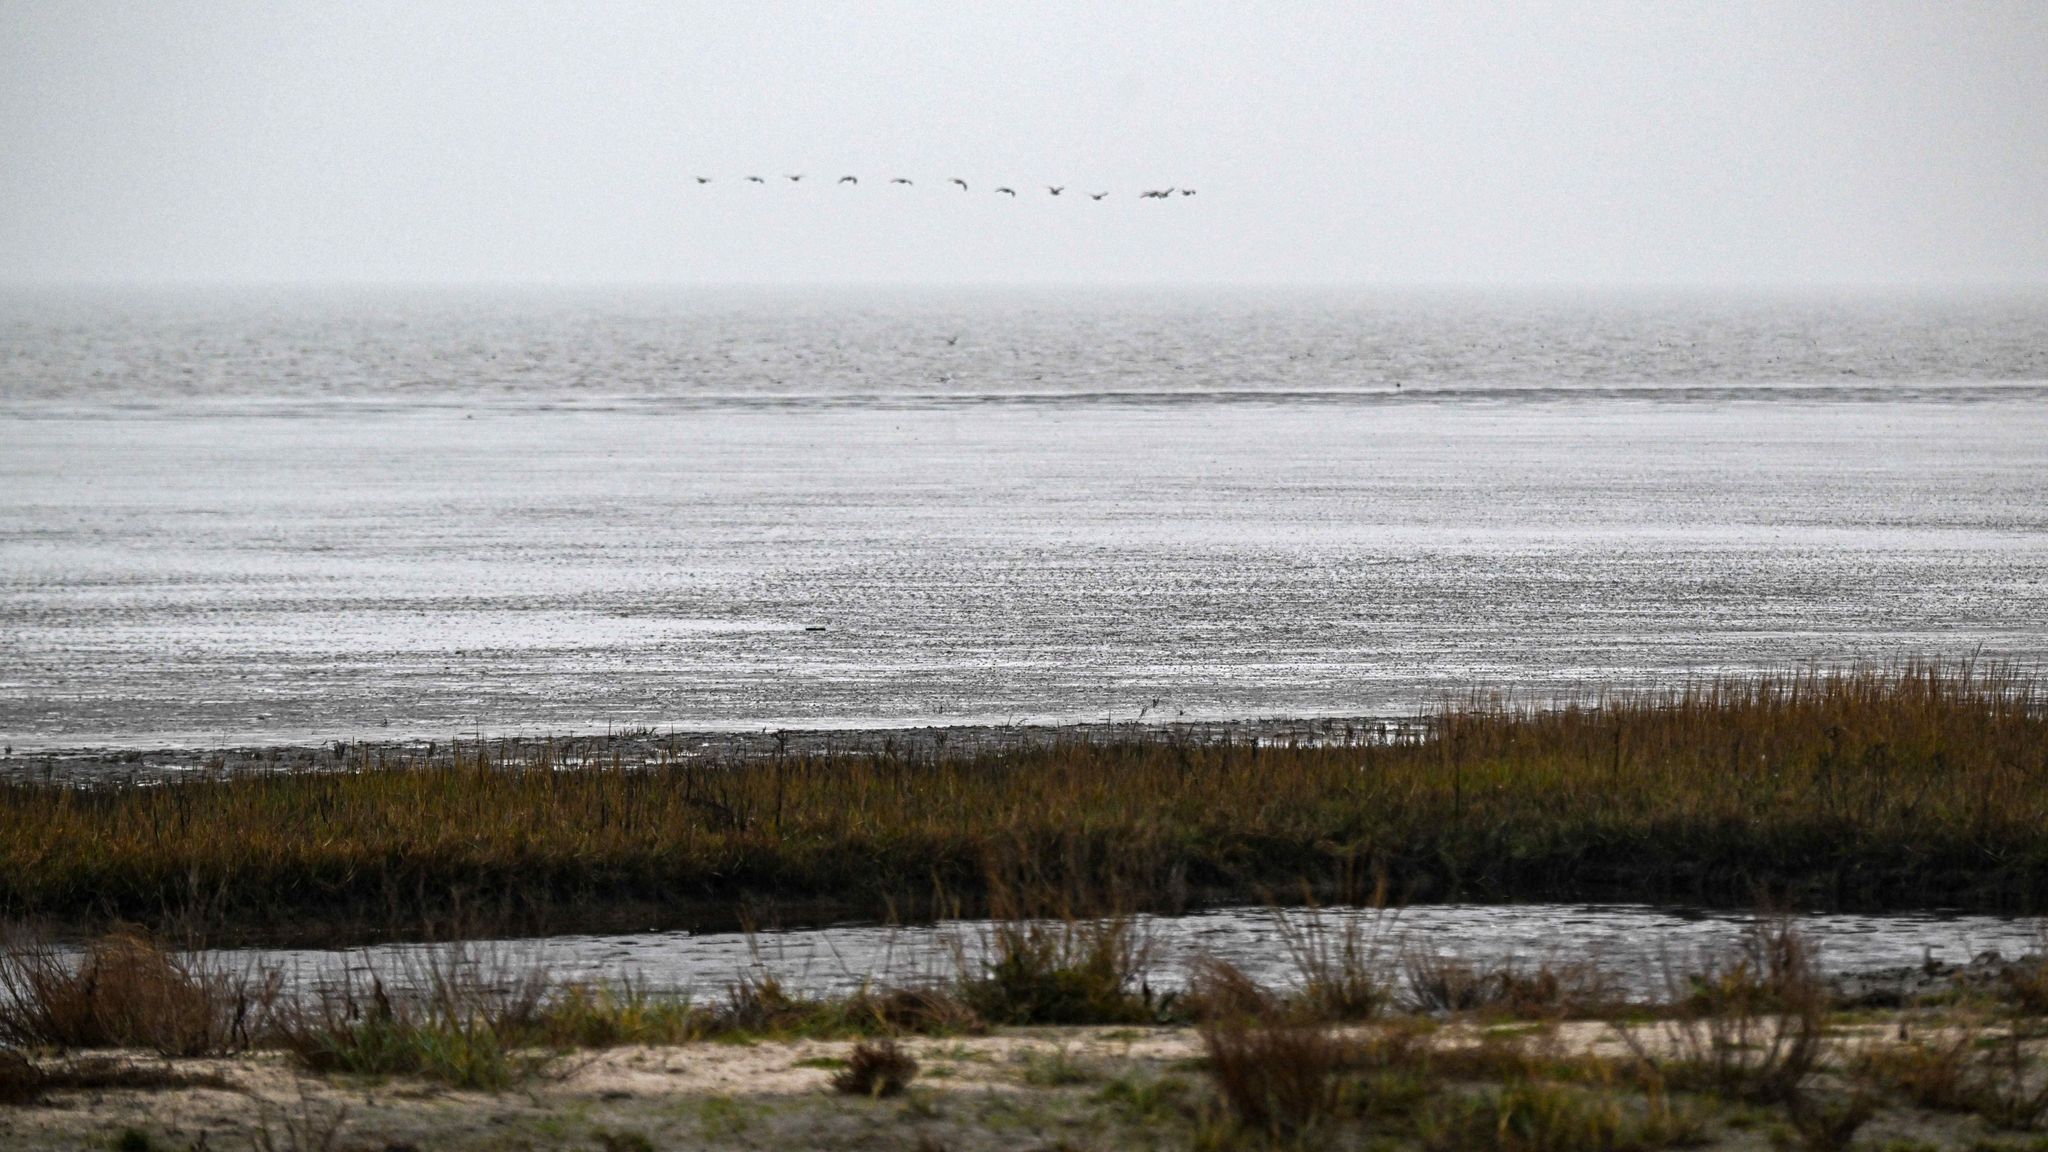 Vögel fliegen über das Watt vor dem Strand von Dangast.